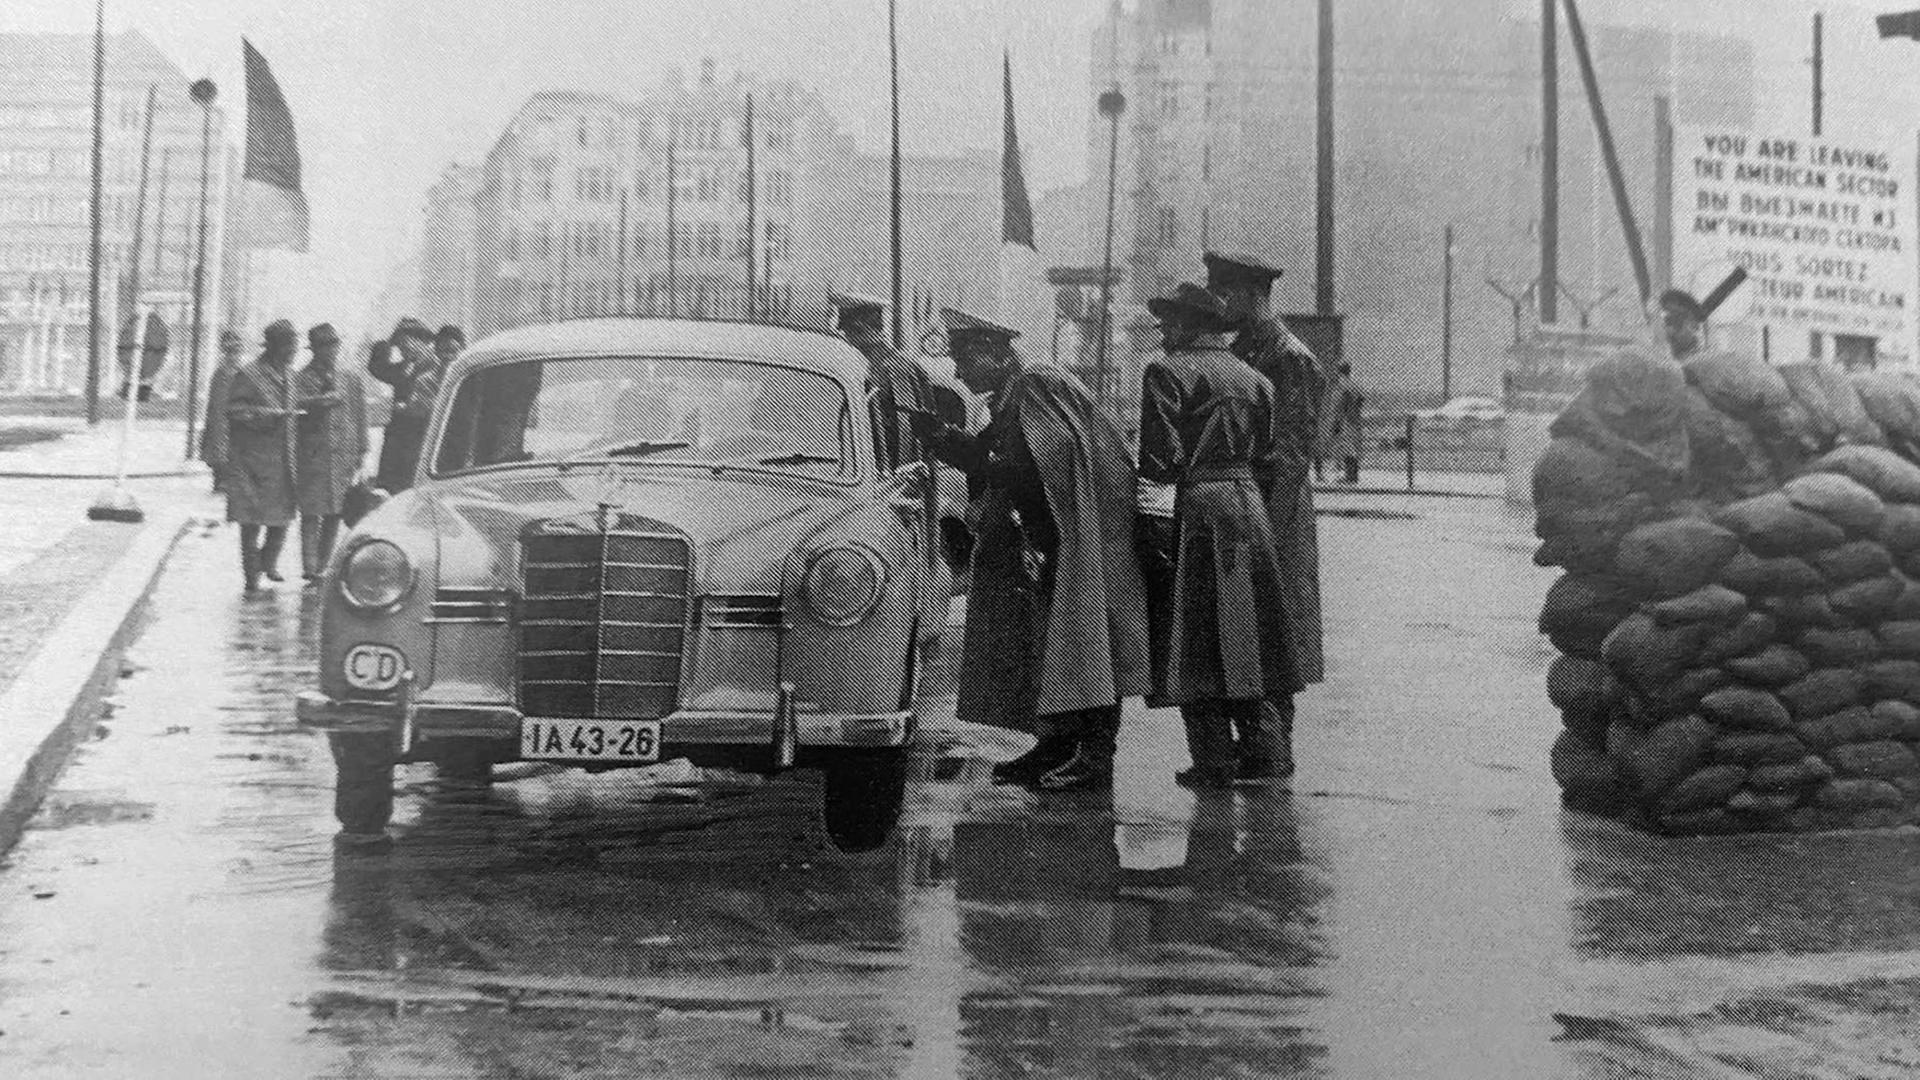 Historisches Schwarzweißfoto eines Autos, das an einem Kontrollpunkt von Polizisten umringt steht.